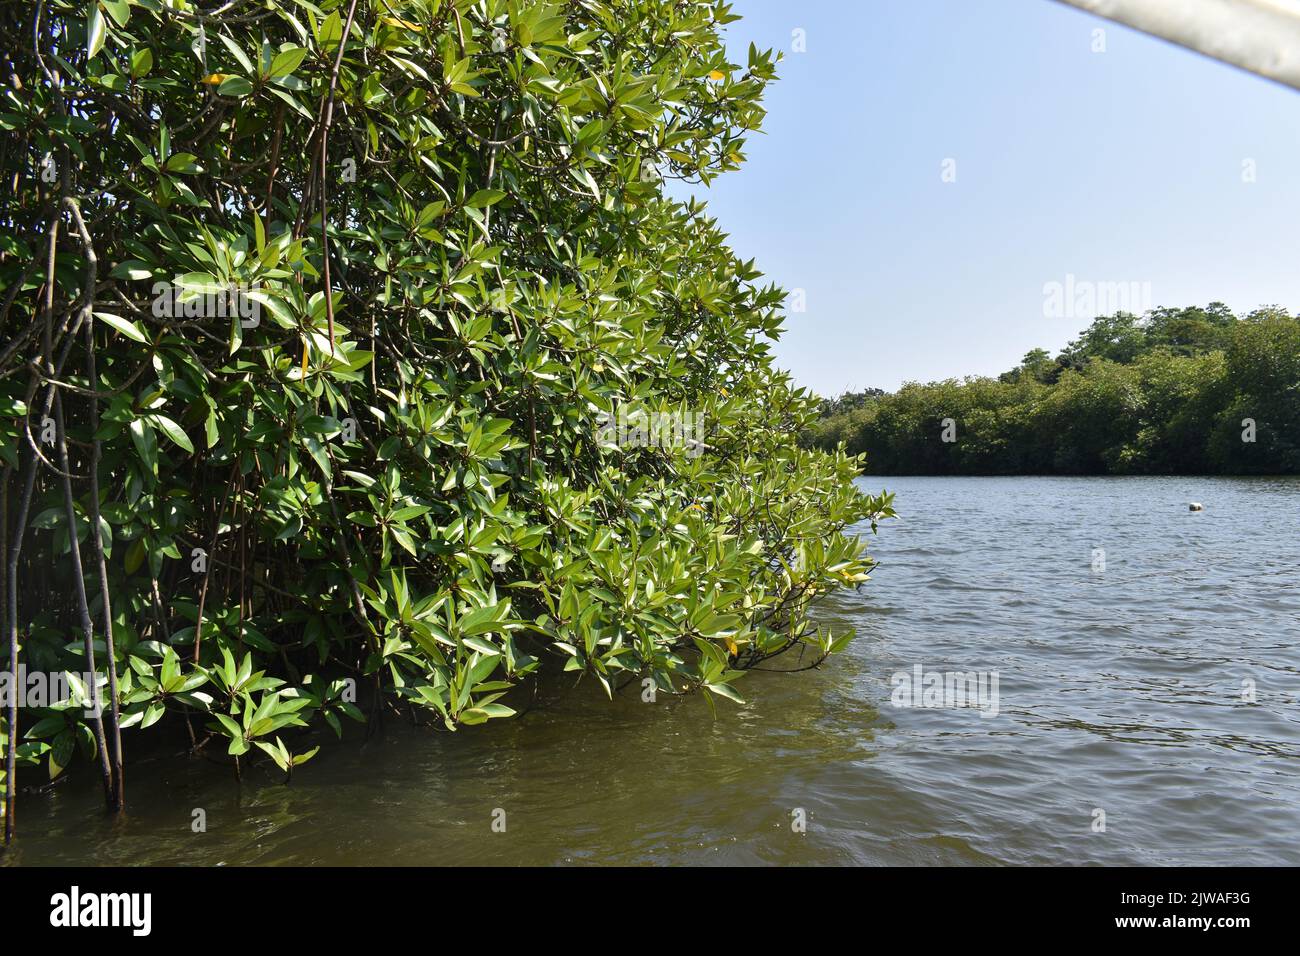 Foresta di Mangroove. Il Madu River Safari e' un'attivita' popolare che deve essere nella lista delle cose da fare di ogni rispettabile portiere di vacanza dello Sri Lanka. Questa indimenticabile attività dura più di due ore e offre al visitatore la possibilità di percorrere i passaggi segreti attraverso le foreste di mangrovie e vedere l'ecologia. Madu Ganga è un corso d'acqua minore che ha origine vicino Uragasmanhandiya nel distretto di Galle dello Sri Lanka, prima di ampliarsi nel lago Madu Ganga a Balapitiya. Il fiume scorre poi per altri 4,4 km prima di scolare nell'Oceano Indiano. Si trova a 88 km a sud di Colombo e a 35 km da Nor Foto Stock